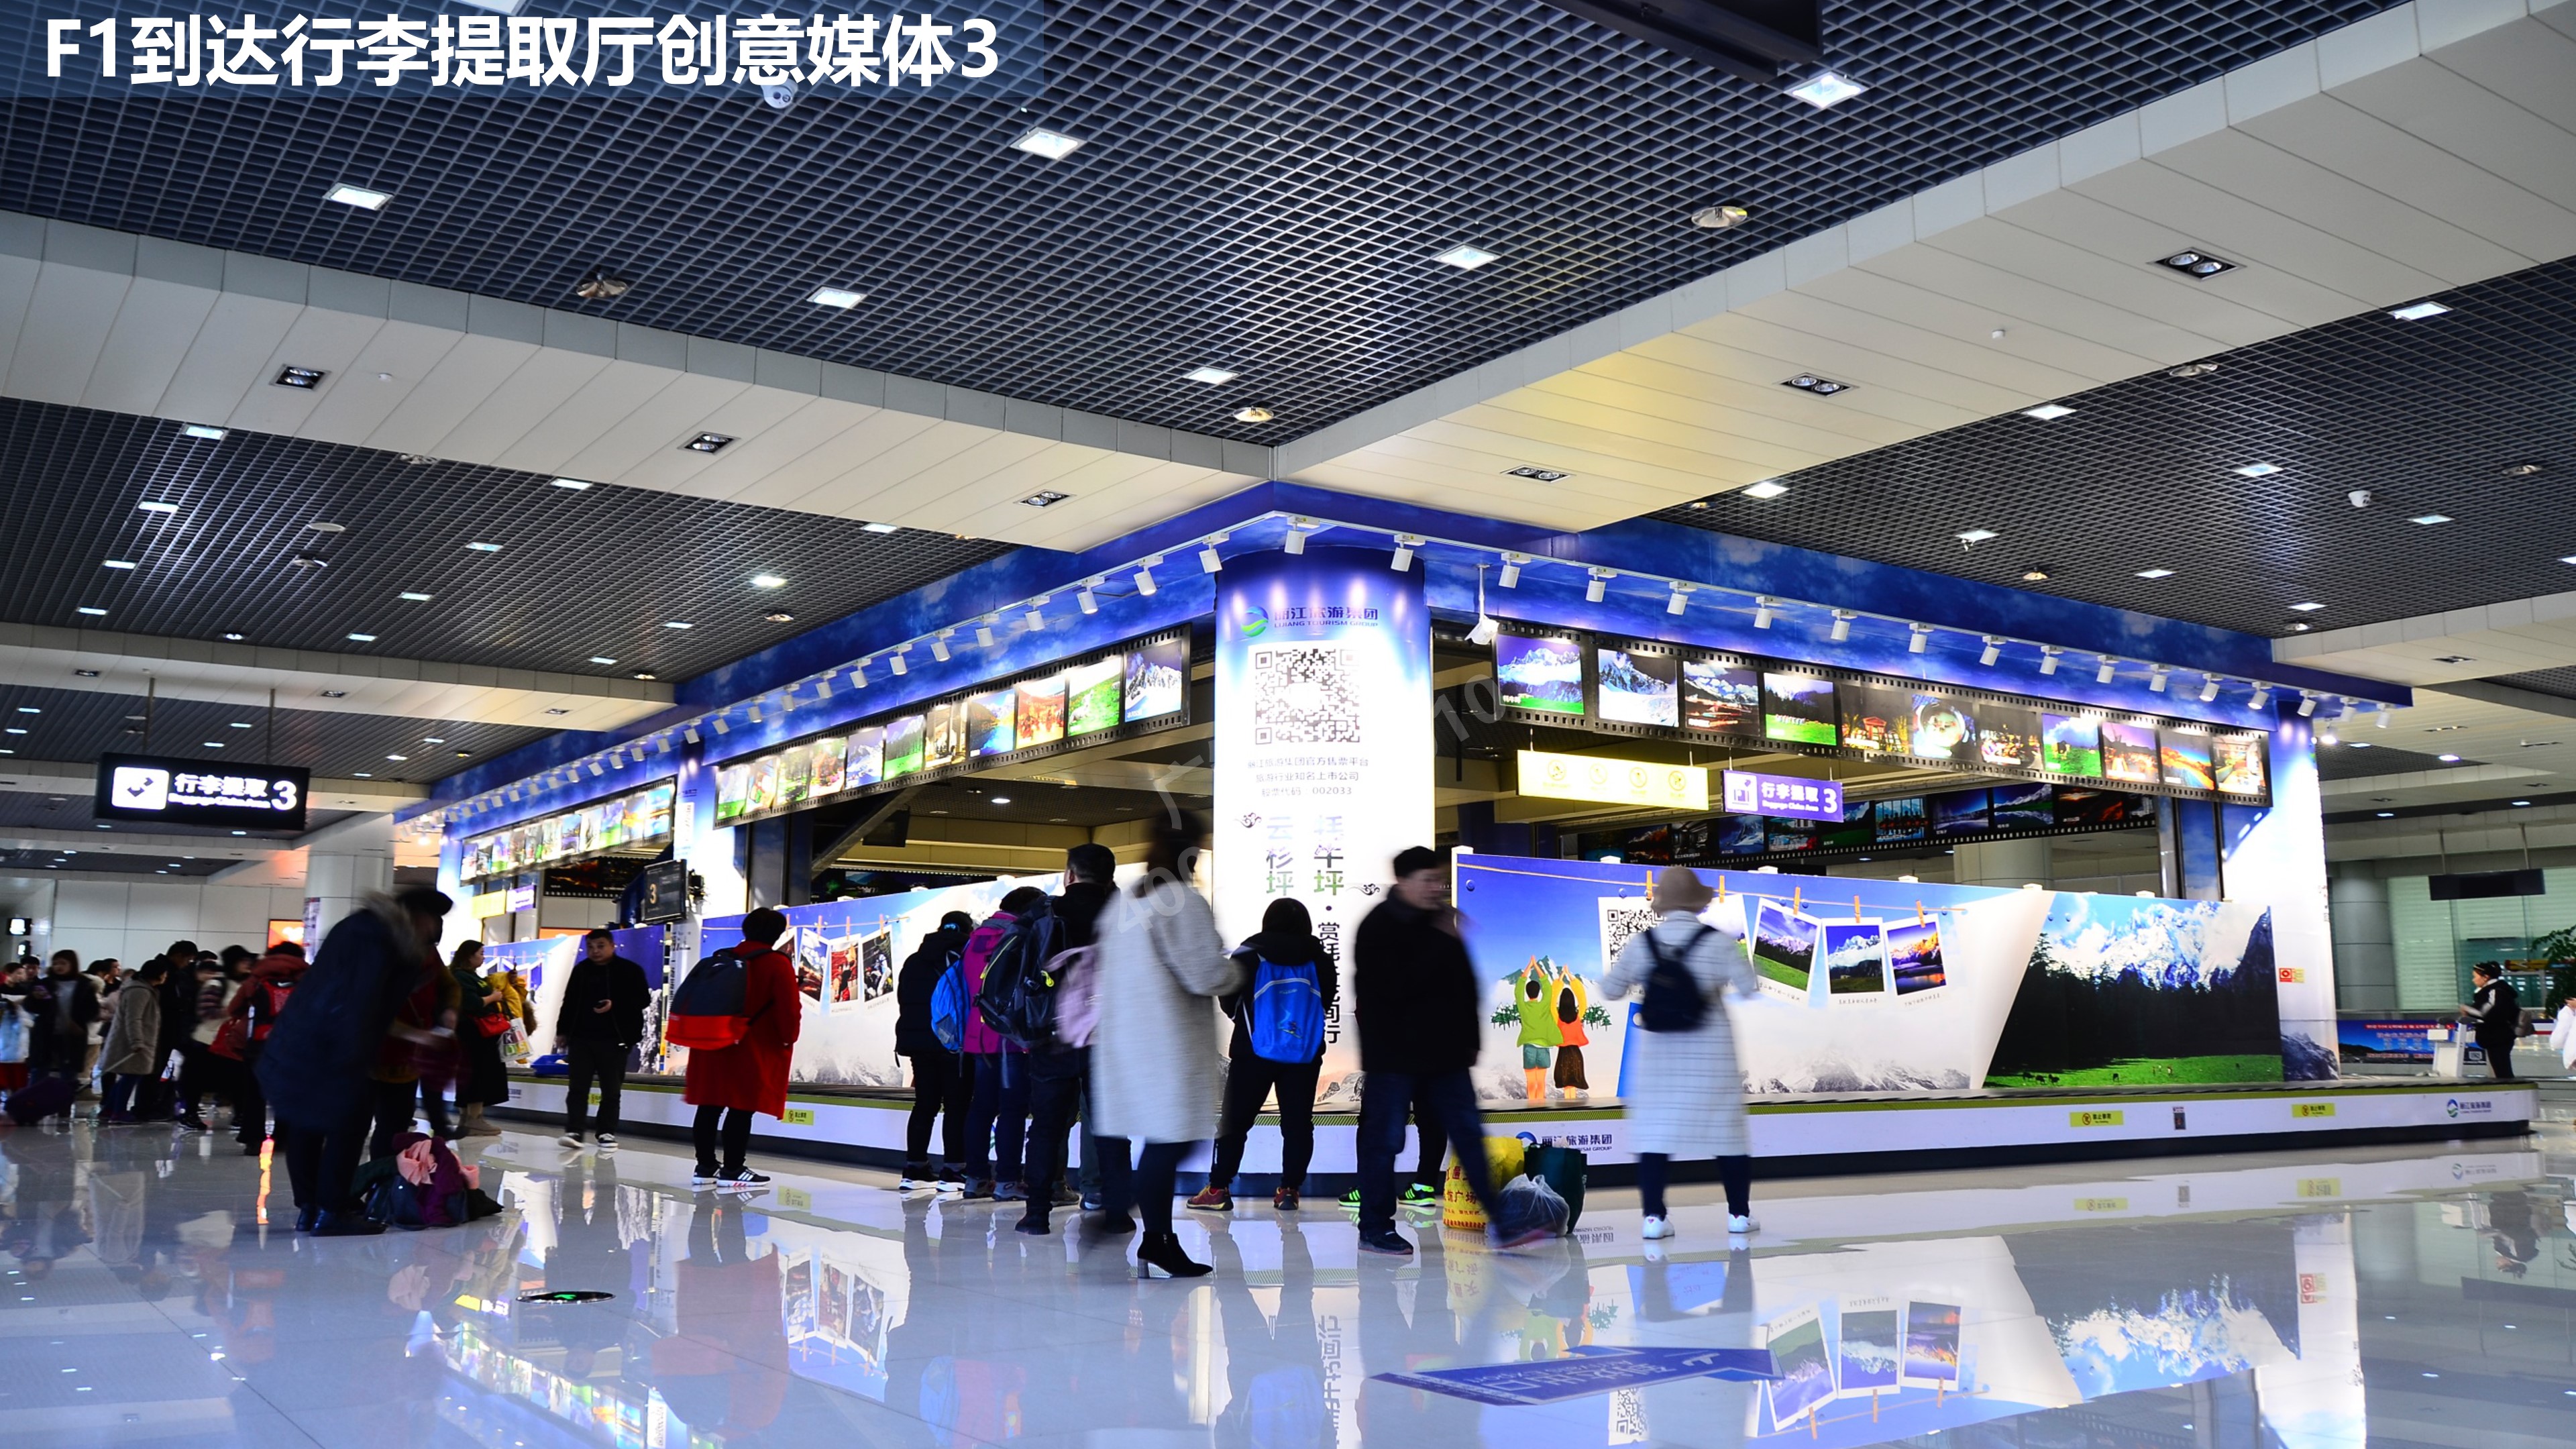 丽江机场行李厅创意媒体广告3